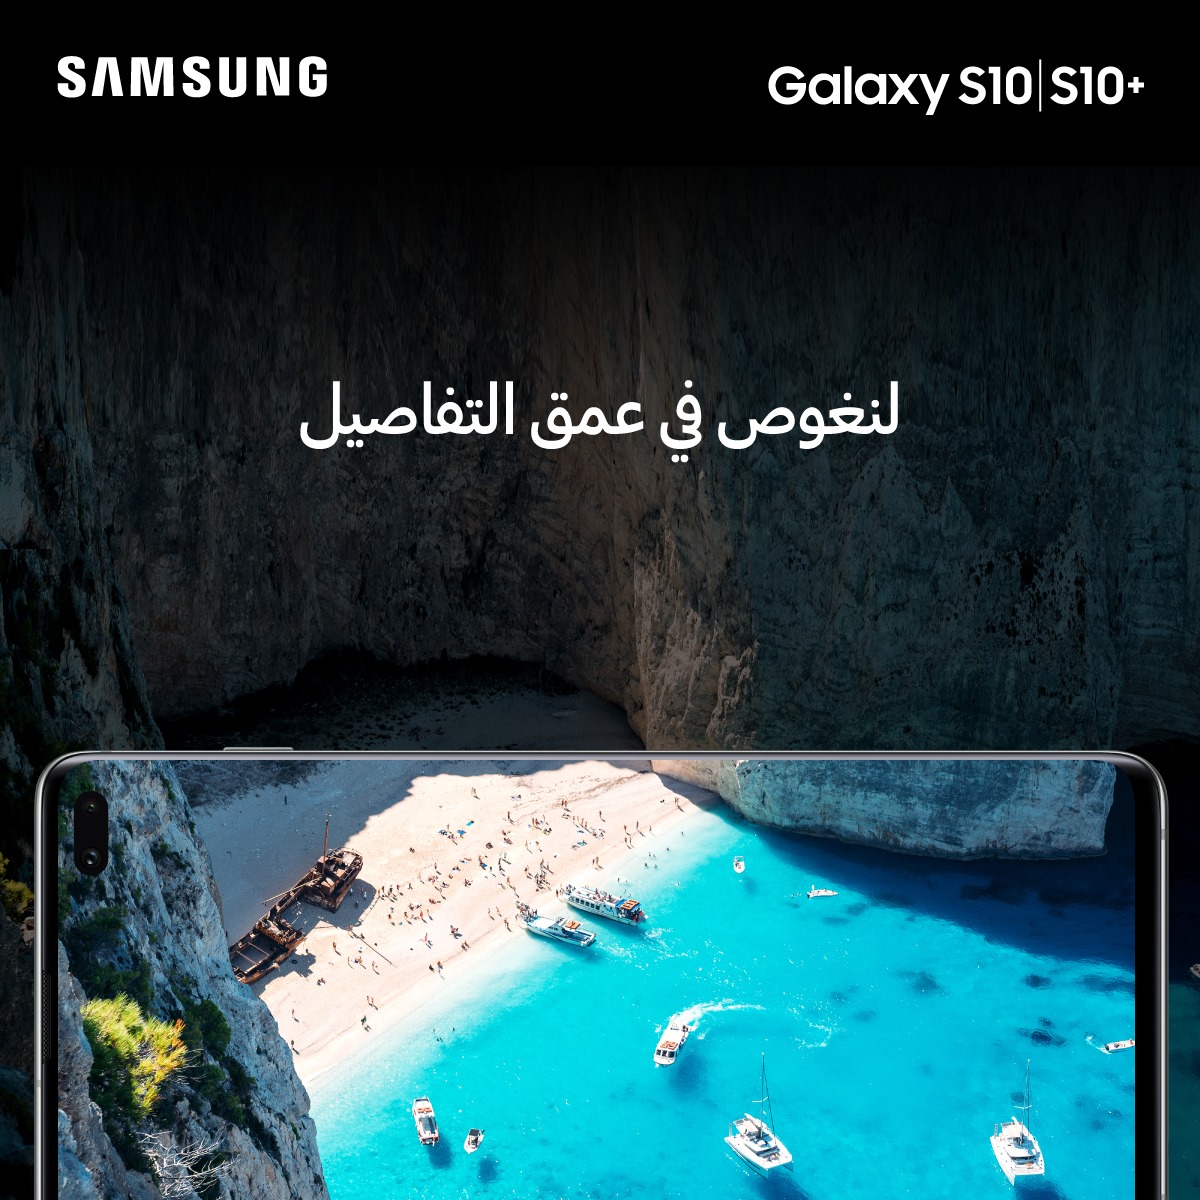 Galaxy S10 يساعدك على التقاط أجمل الصور خلال الساعة الذهبية في فصل الصيف